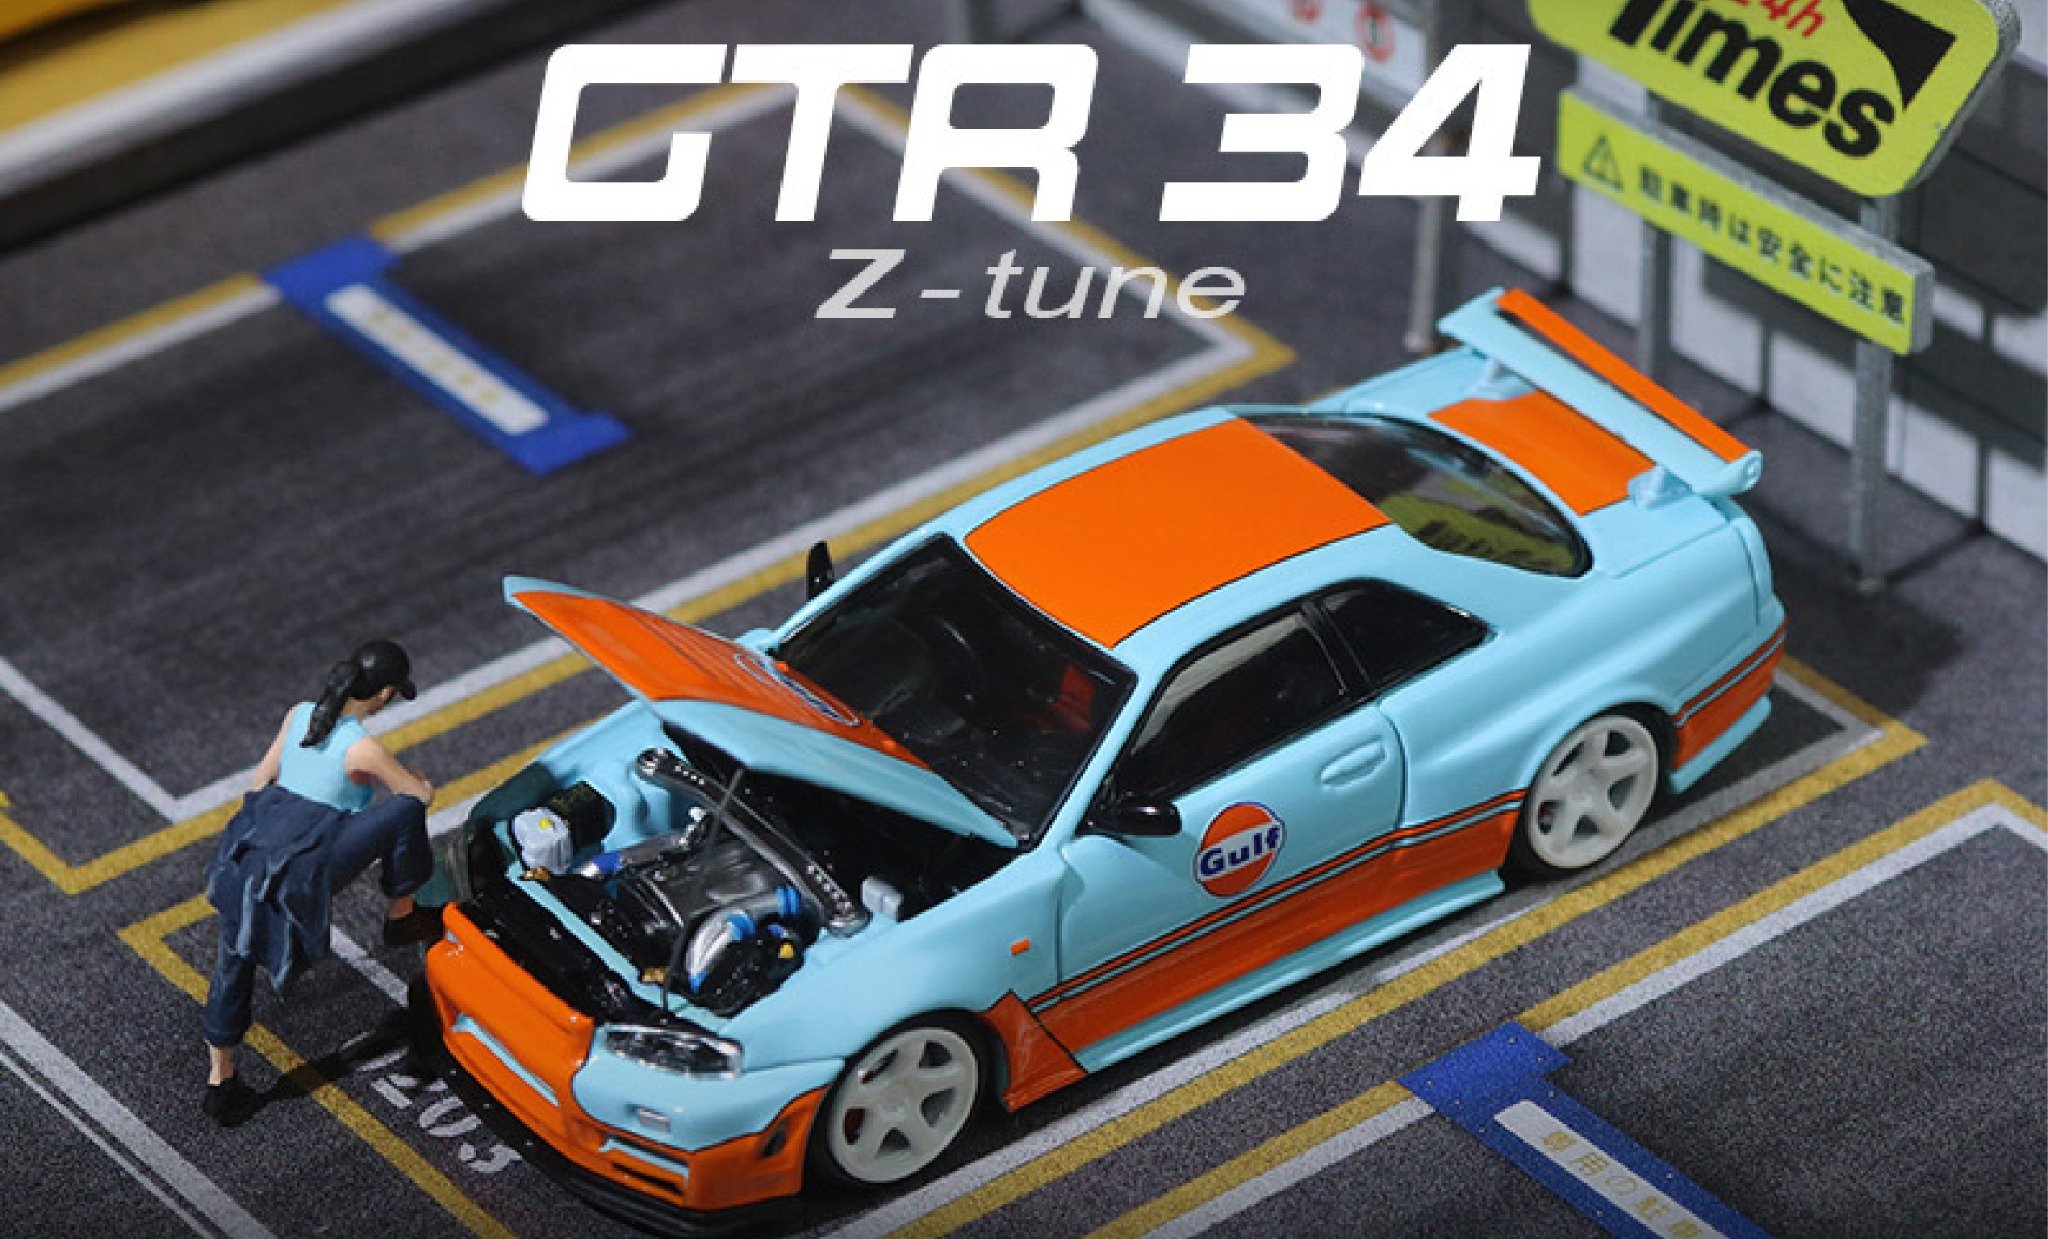  Mô hình xe ô tô Nissan GTR34 Gulf Limited Edition tỉ lệ 1:64 Time micro TM643414 